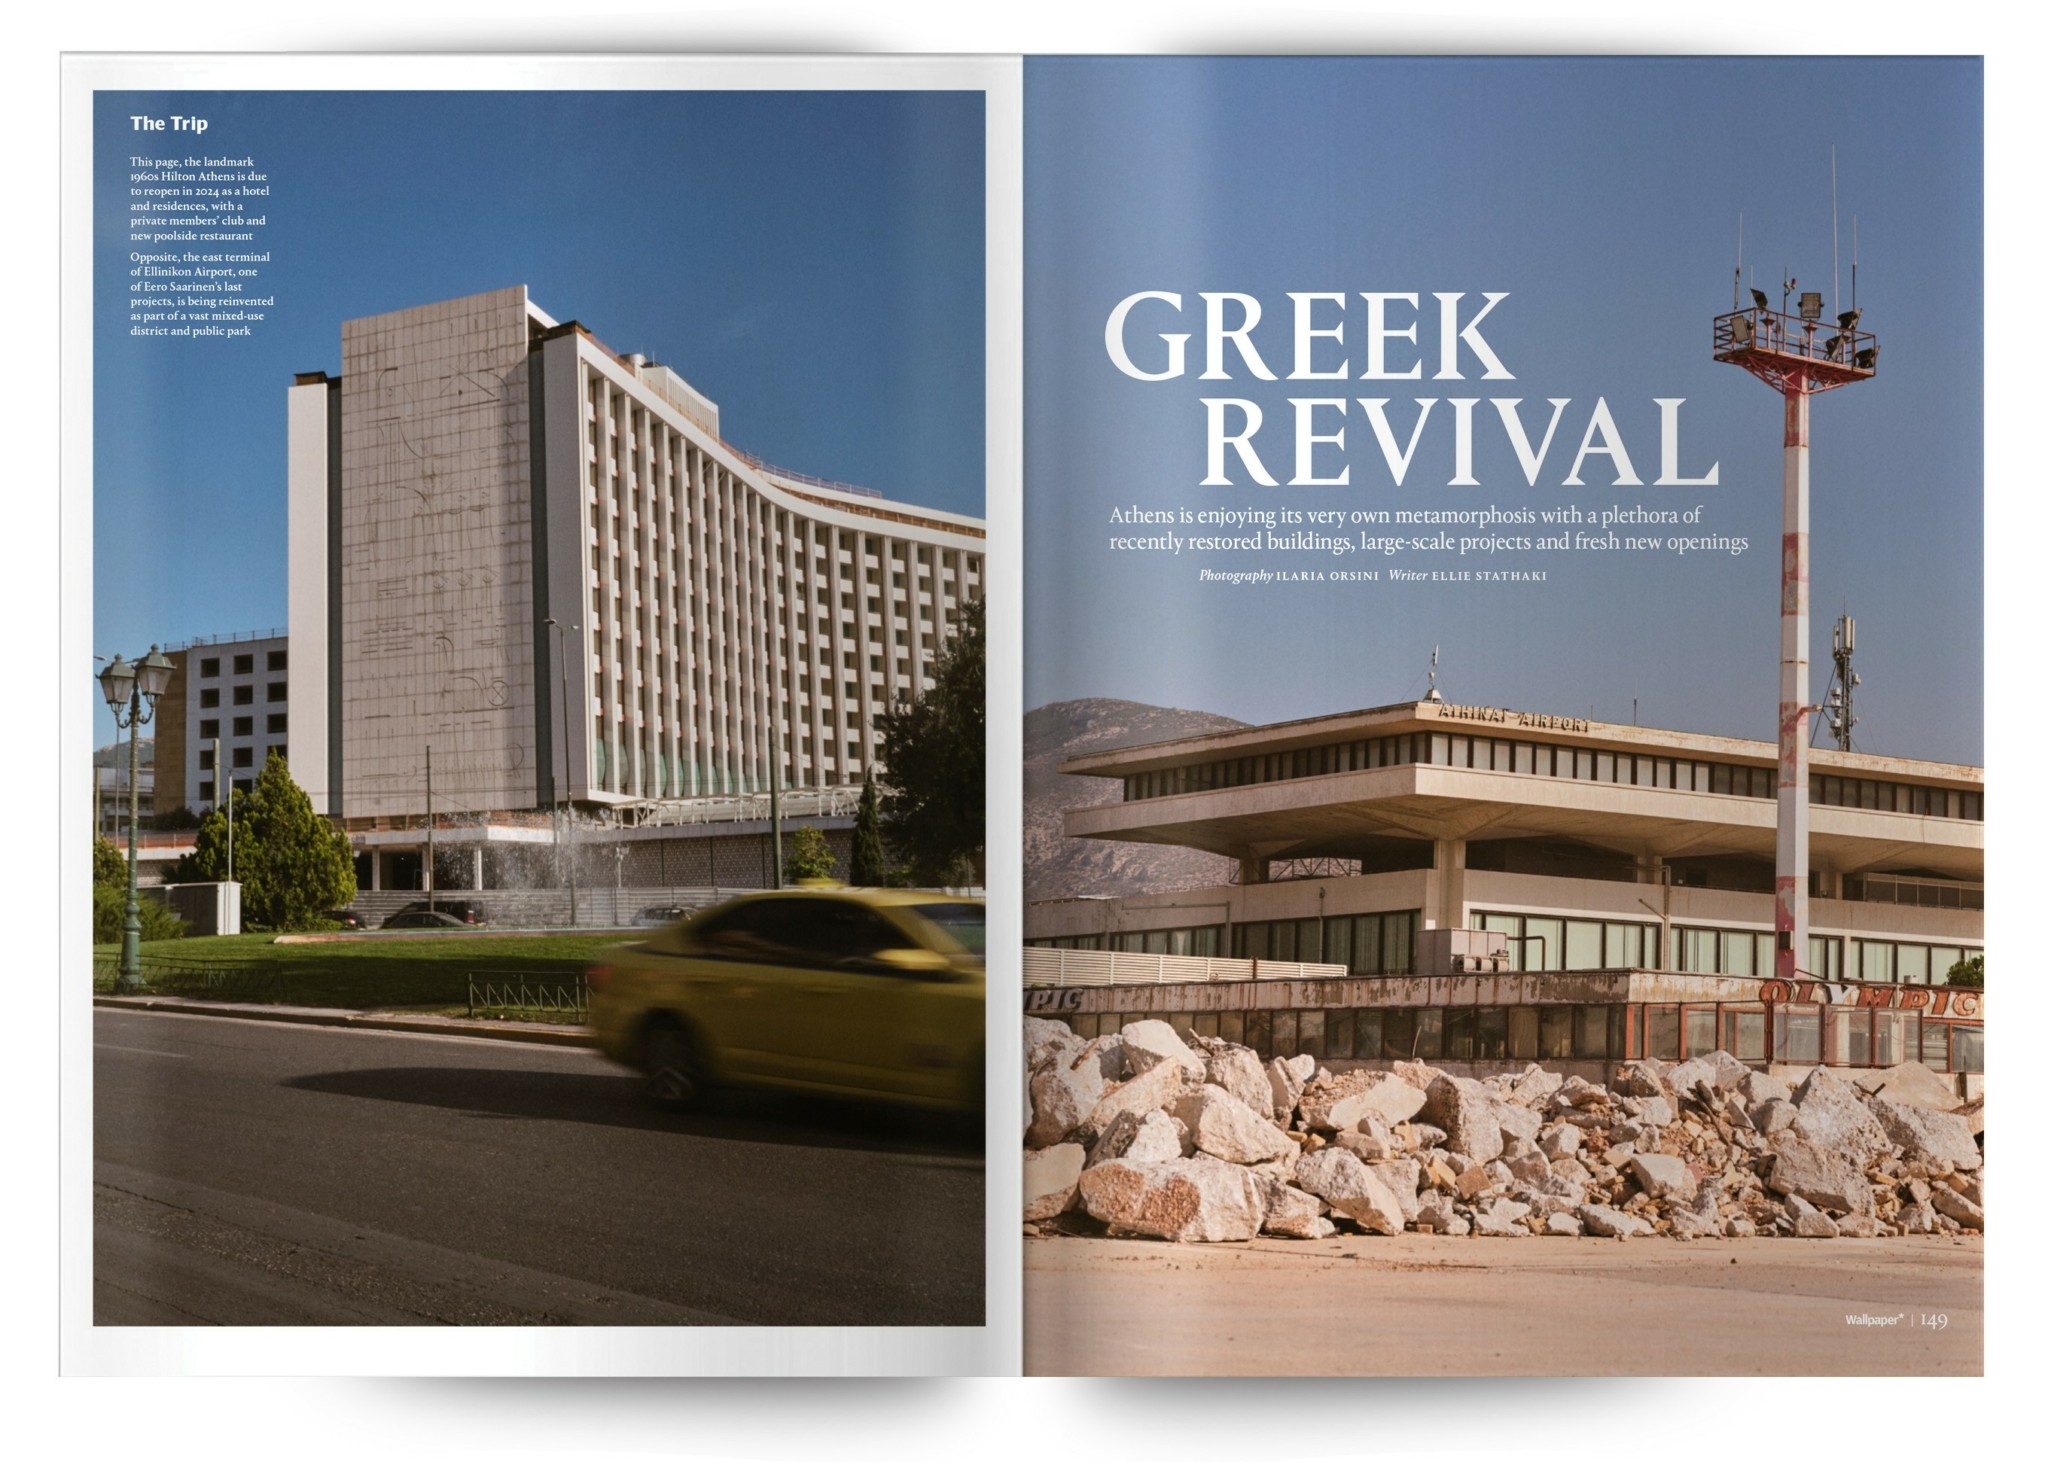 Η Ελληνίδα που μιλά σε όλον τον κόσμο για την αρχιτεκτονική μεταμόρφωση της Αθήνας